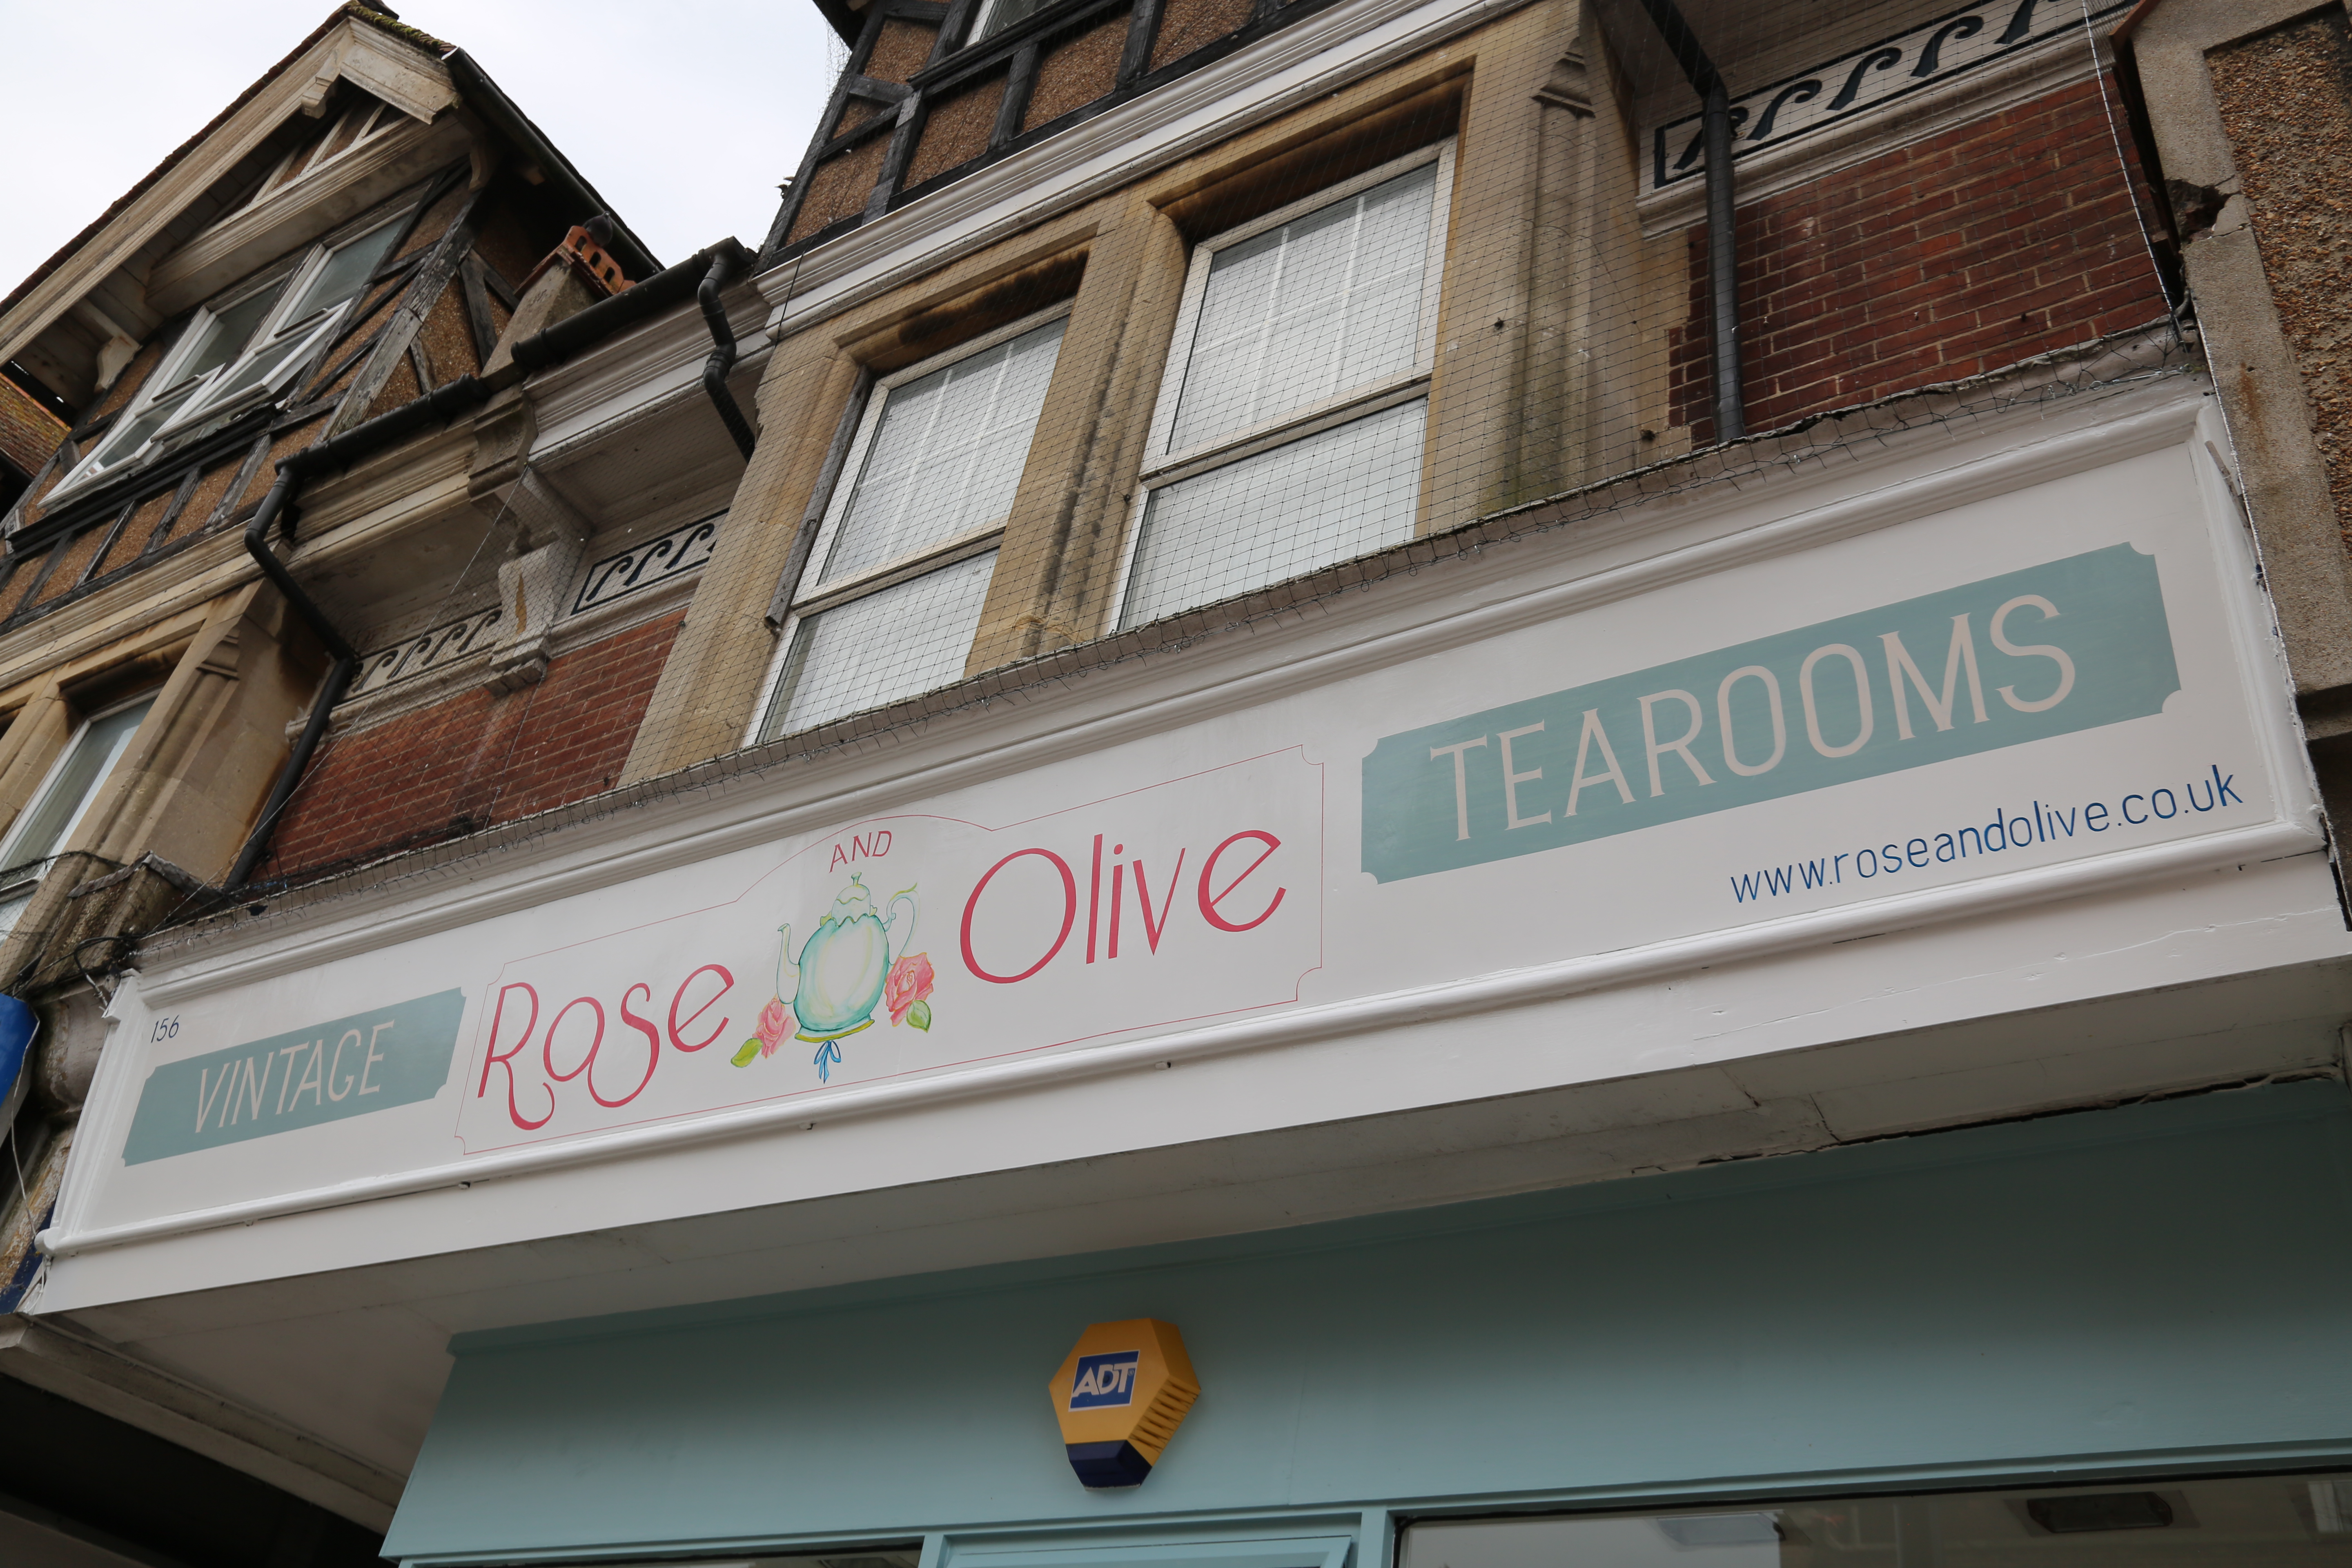 Rose & Olive Tea Rooms